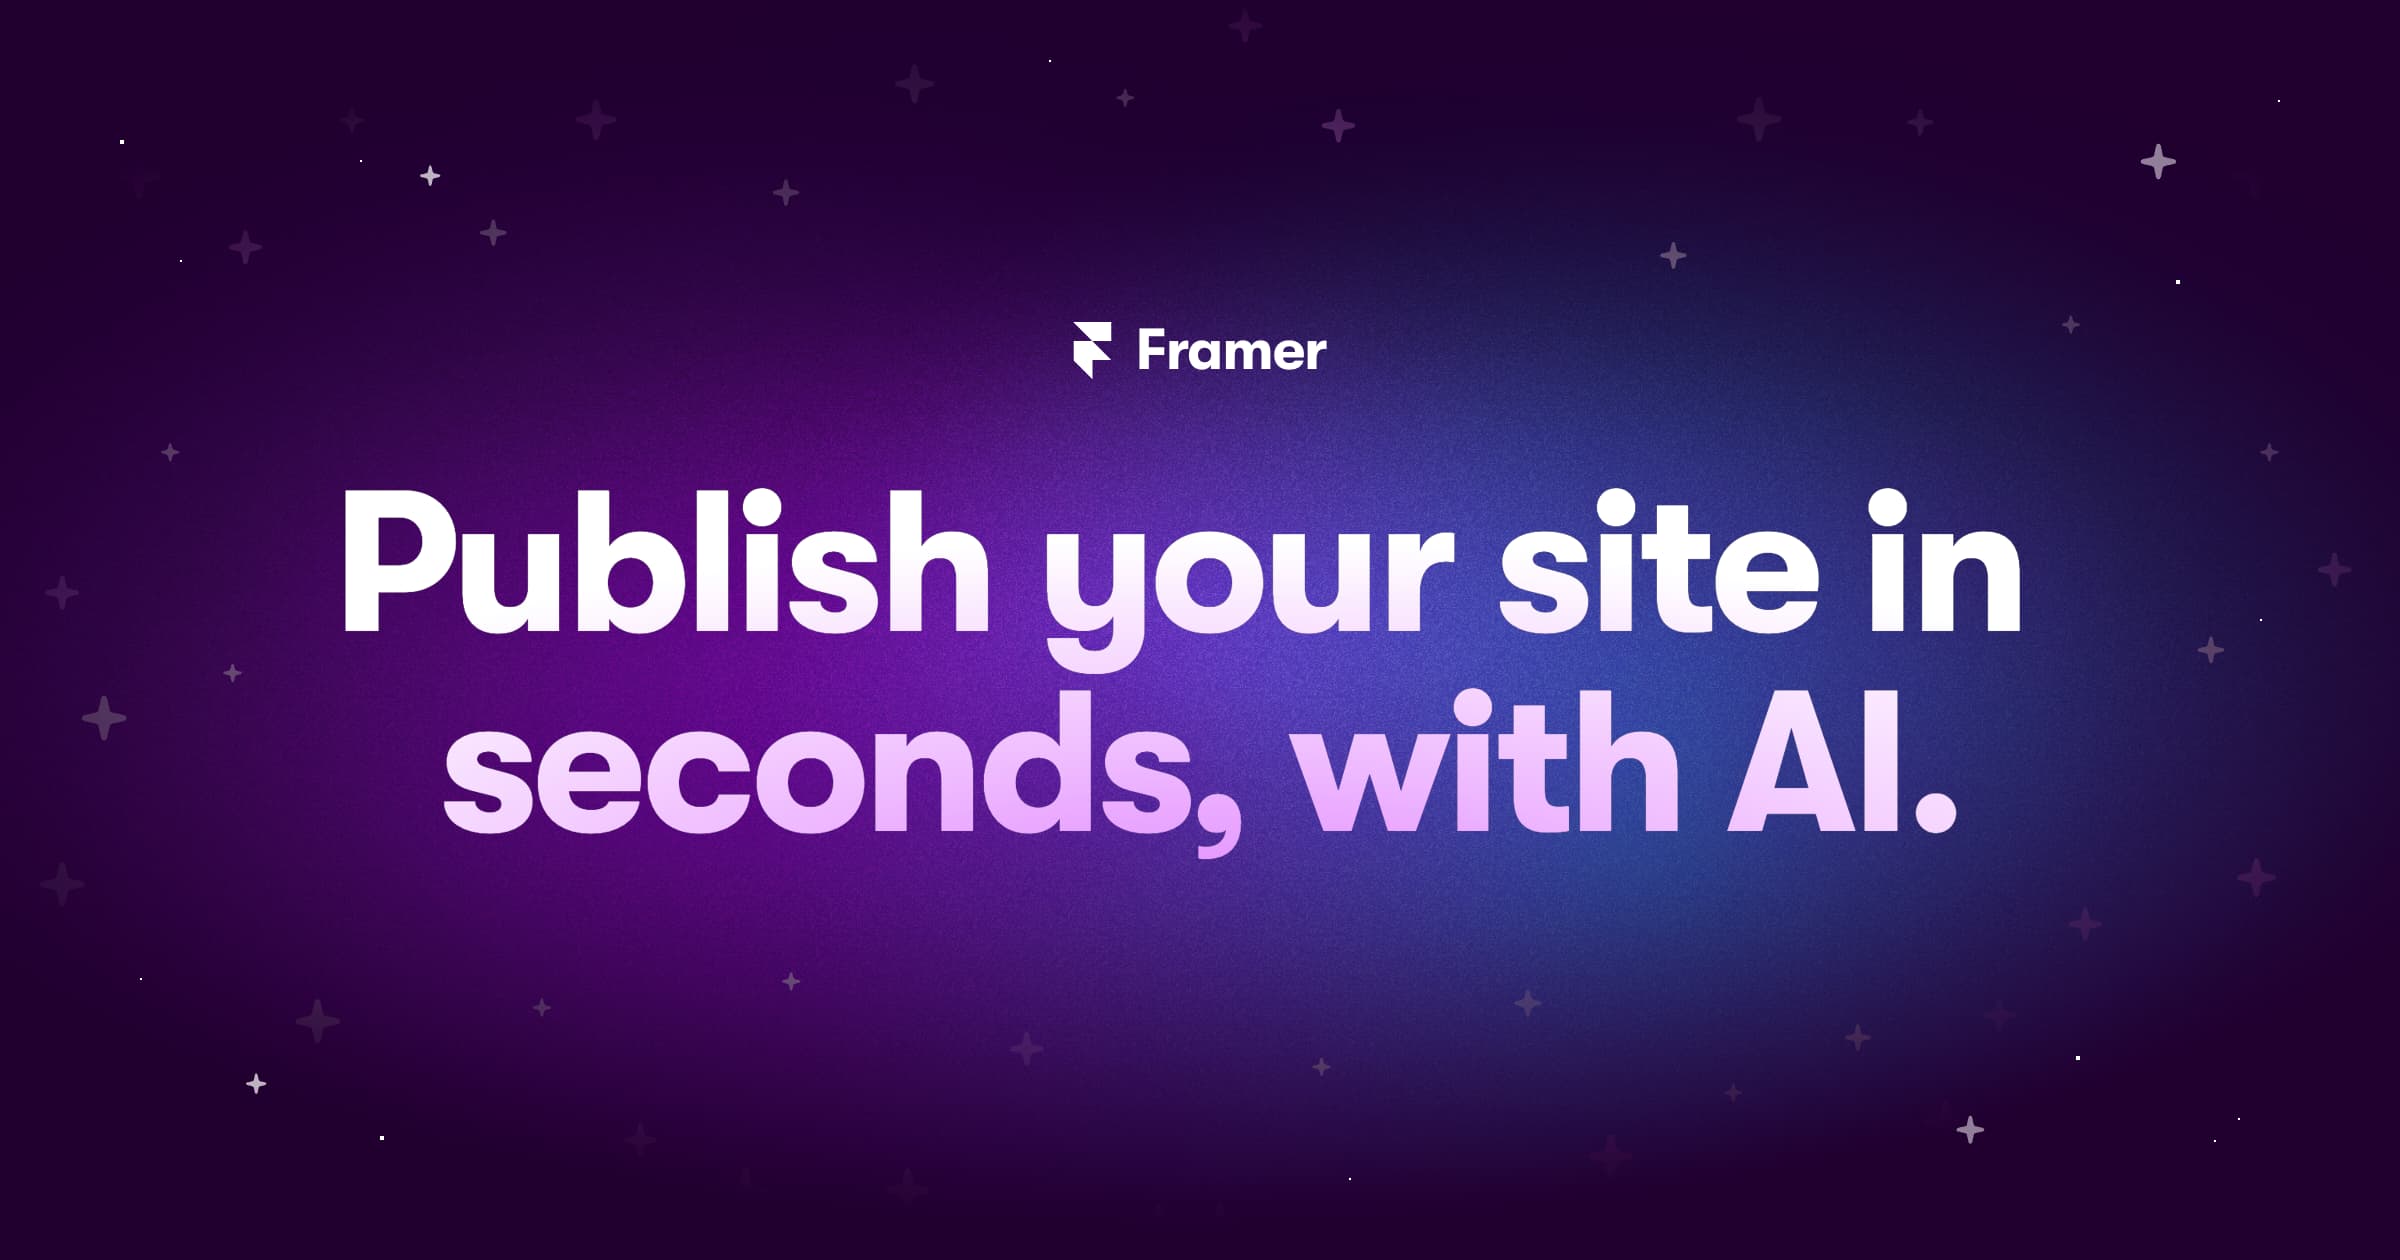 Framer AI - eine Plattform zum Erstellen und Veröffentlichen von Websites